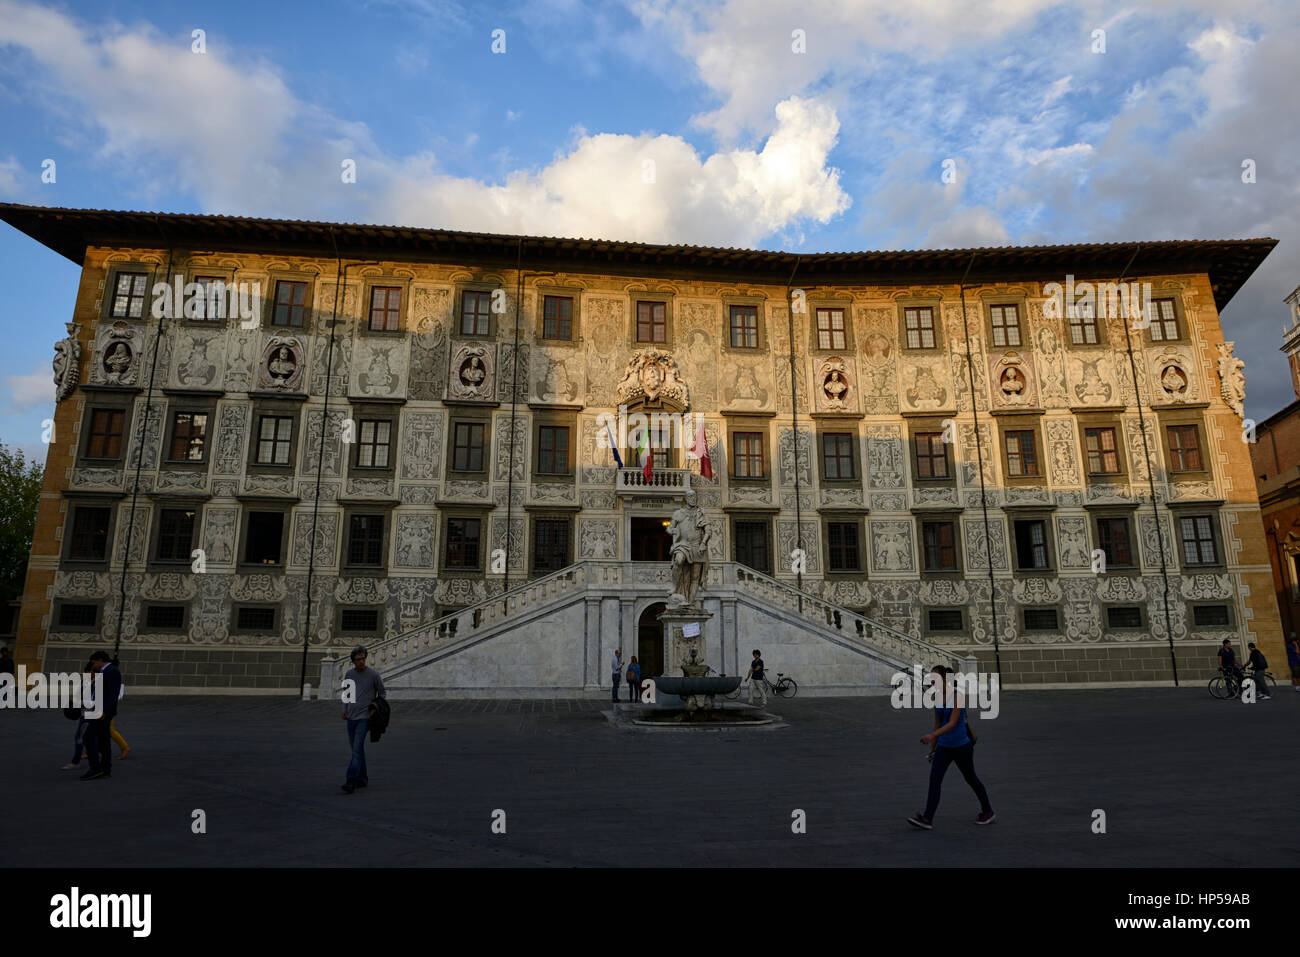 Scuola Normale Superiore Pisa University Palazzo della Carovana dei Cavalieri Knights Square Pisa Italy RM World Stock Photo